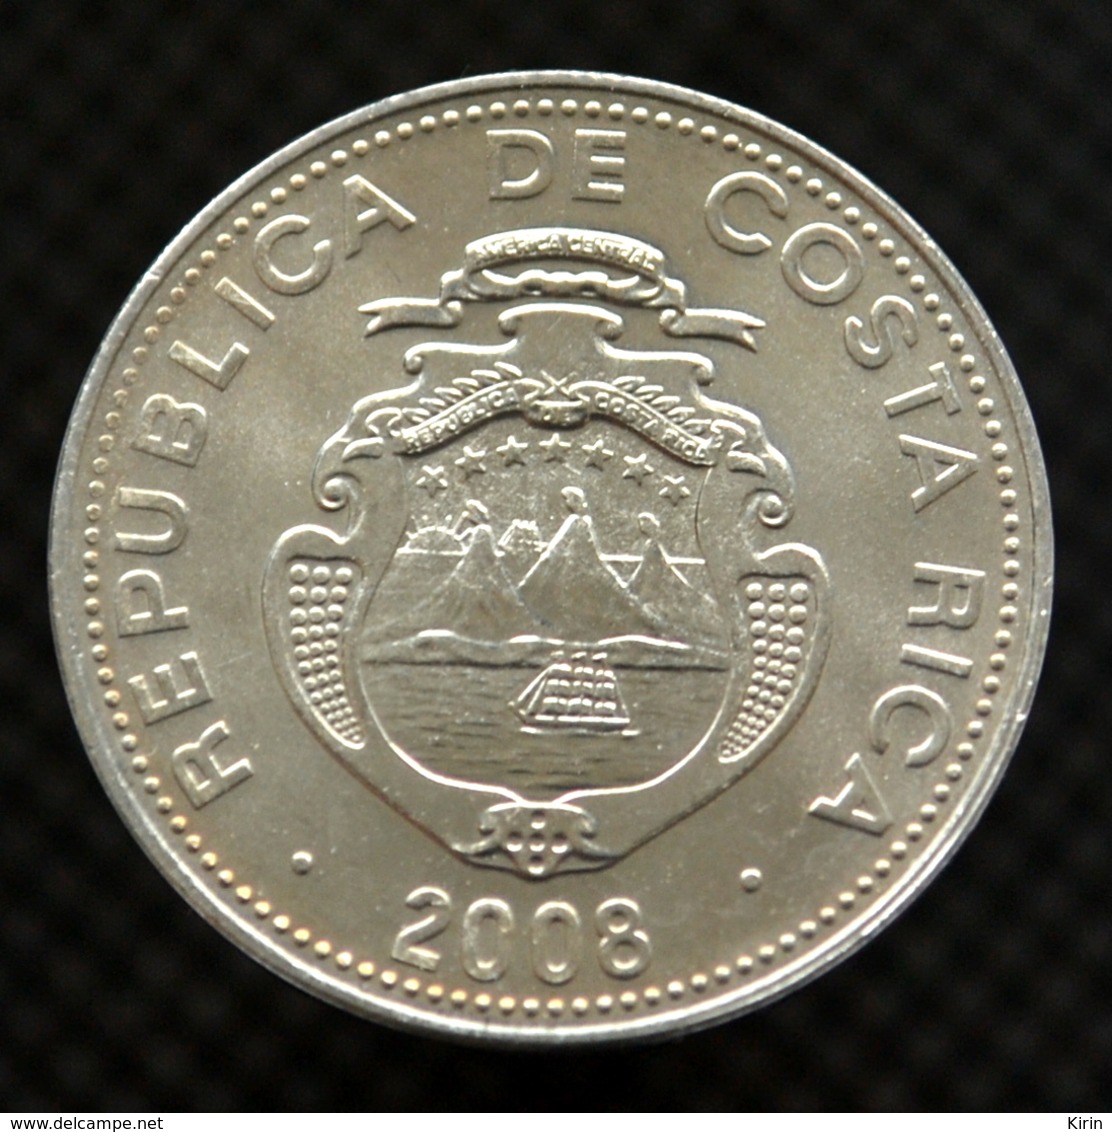 Costa Rica 5 Colones Coin. Km227b. UNC - Costa Rica